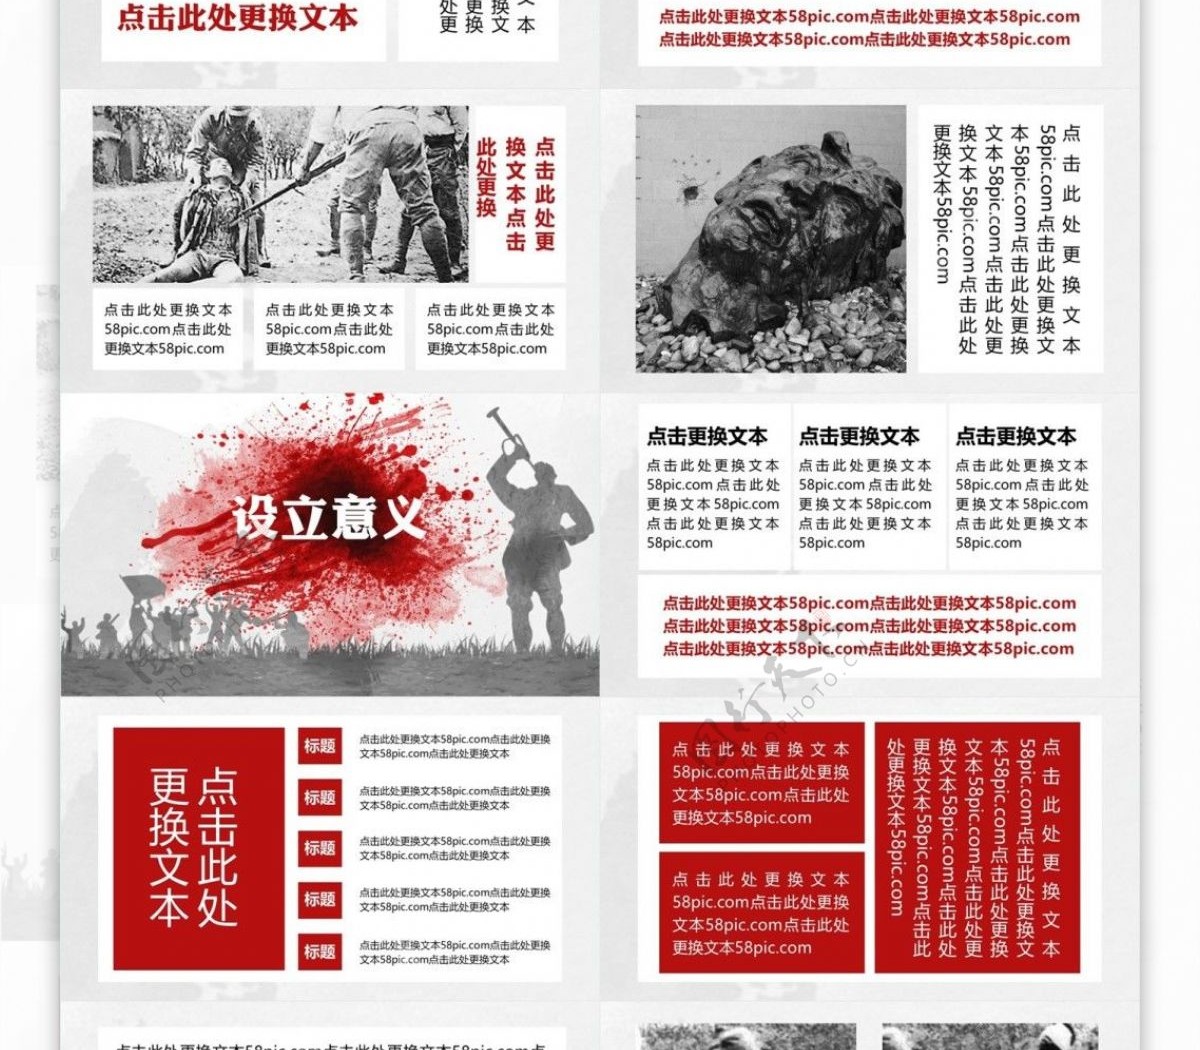 红色色块南京大屠杀纪念学习PPT模板